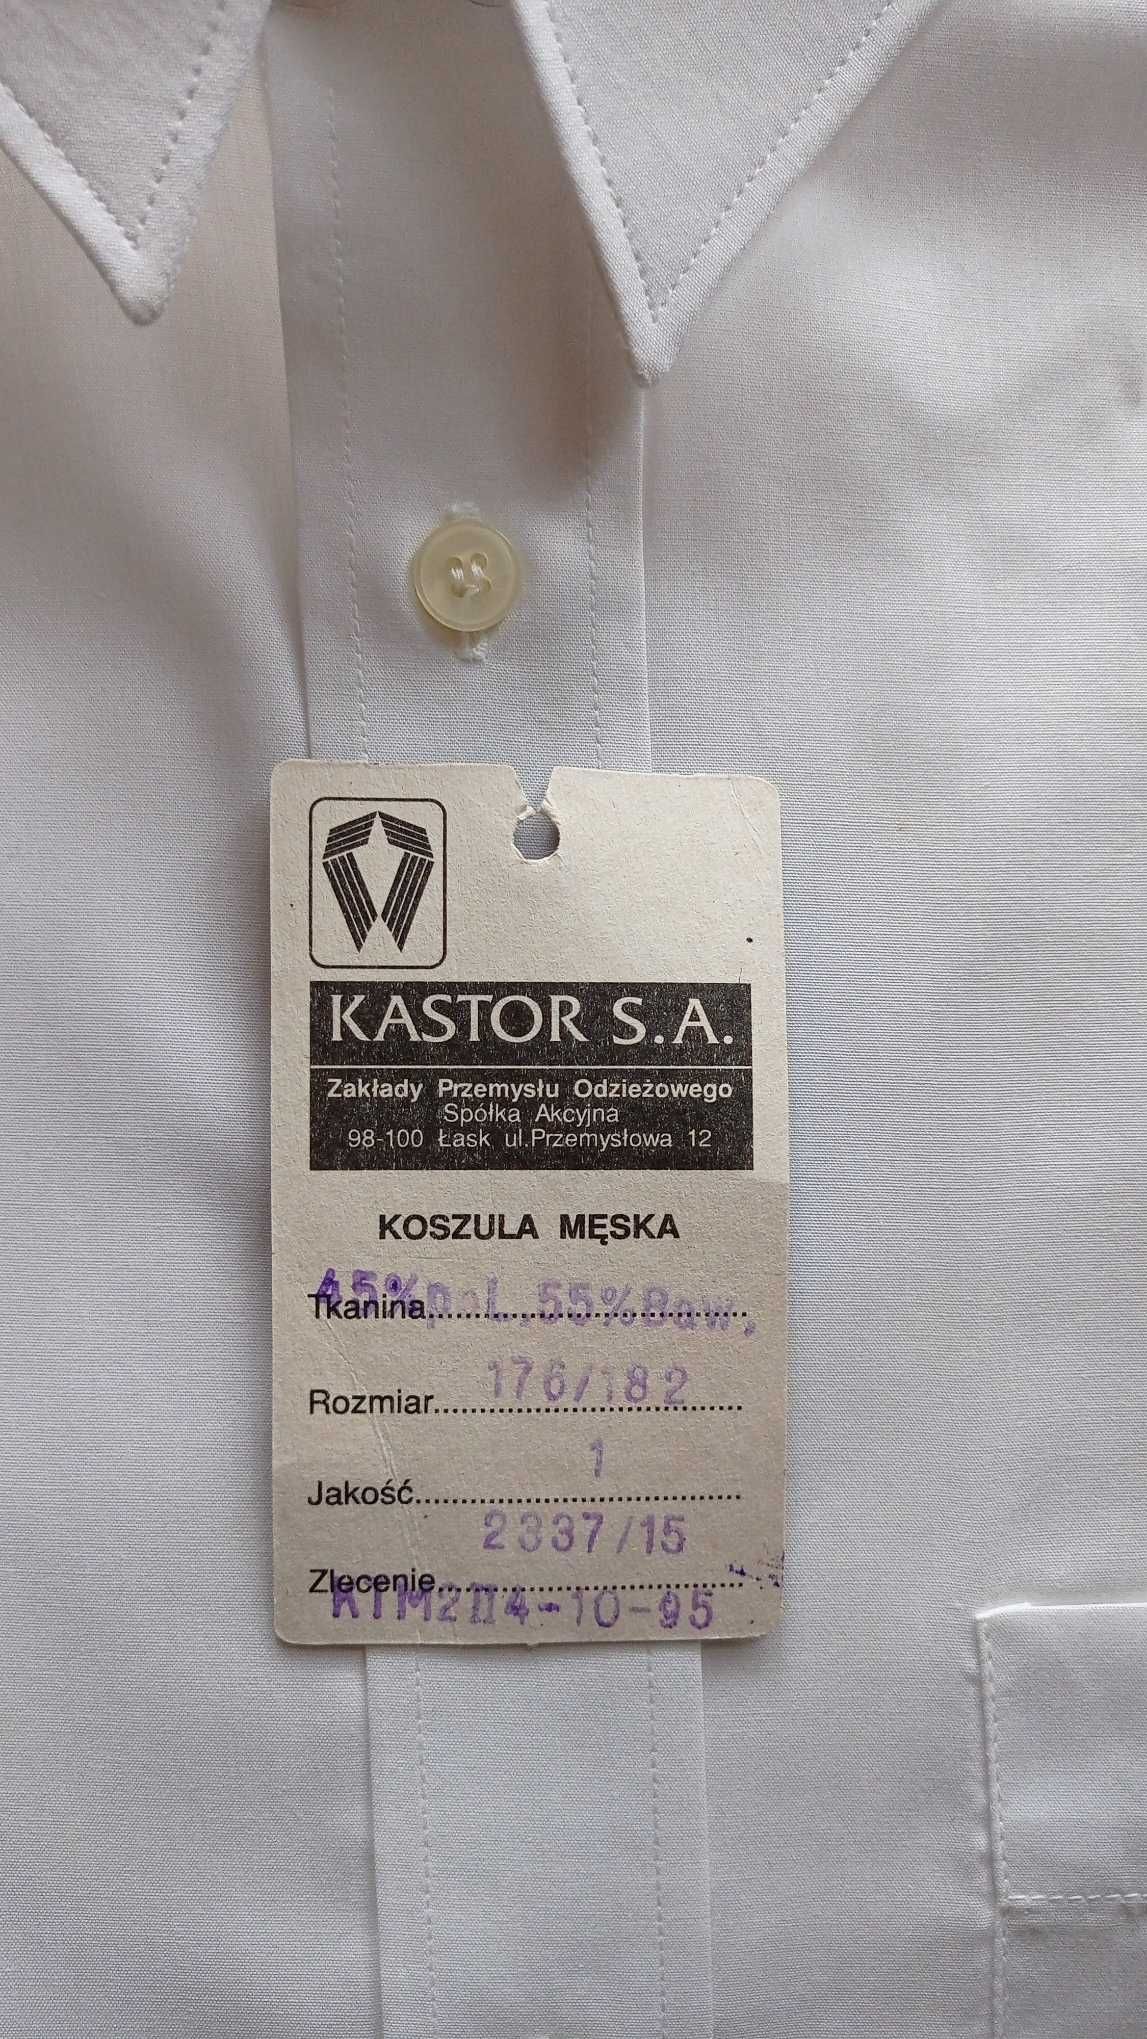 Koszula męska klasyczna biała firmy KASTOR rozm.42 - 40 zł